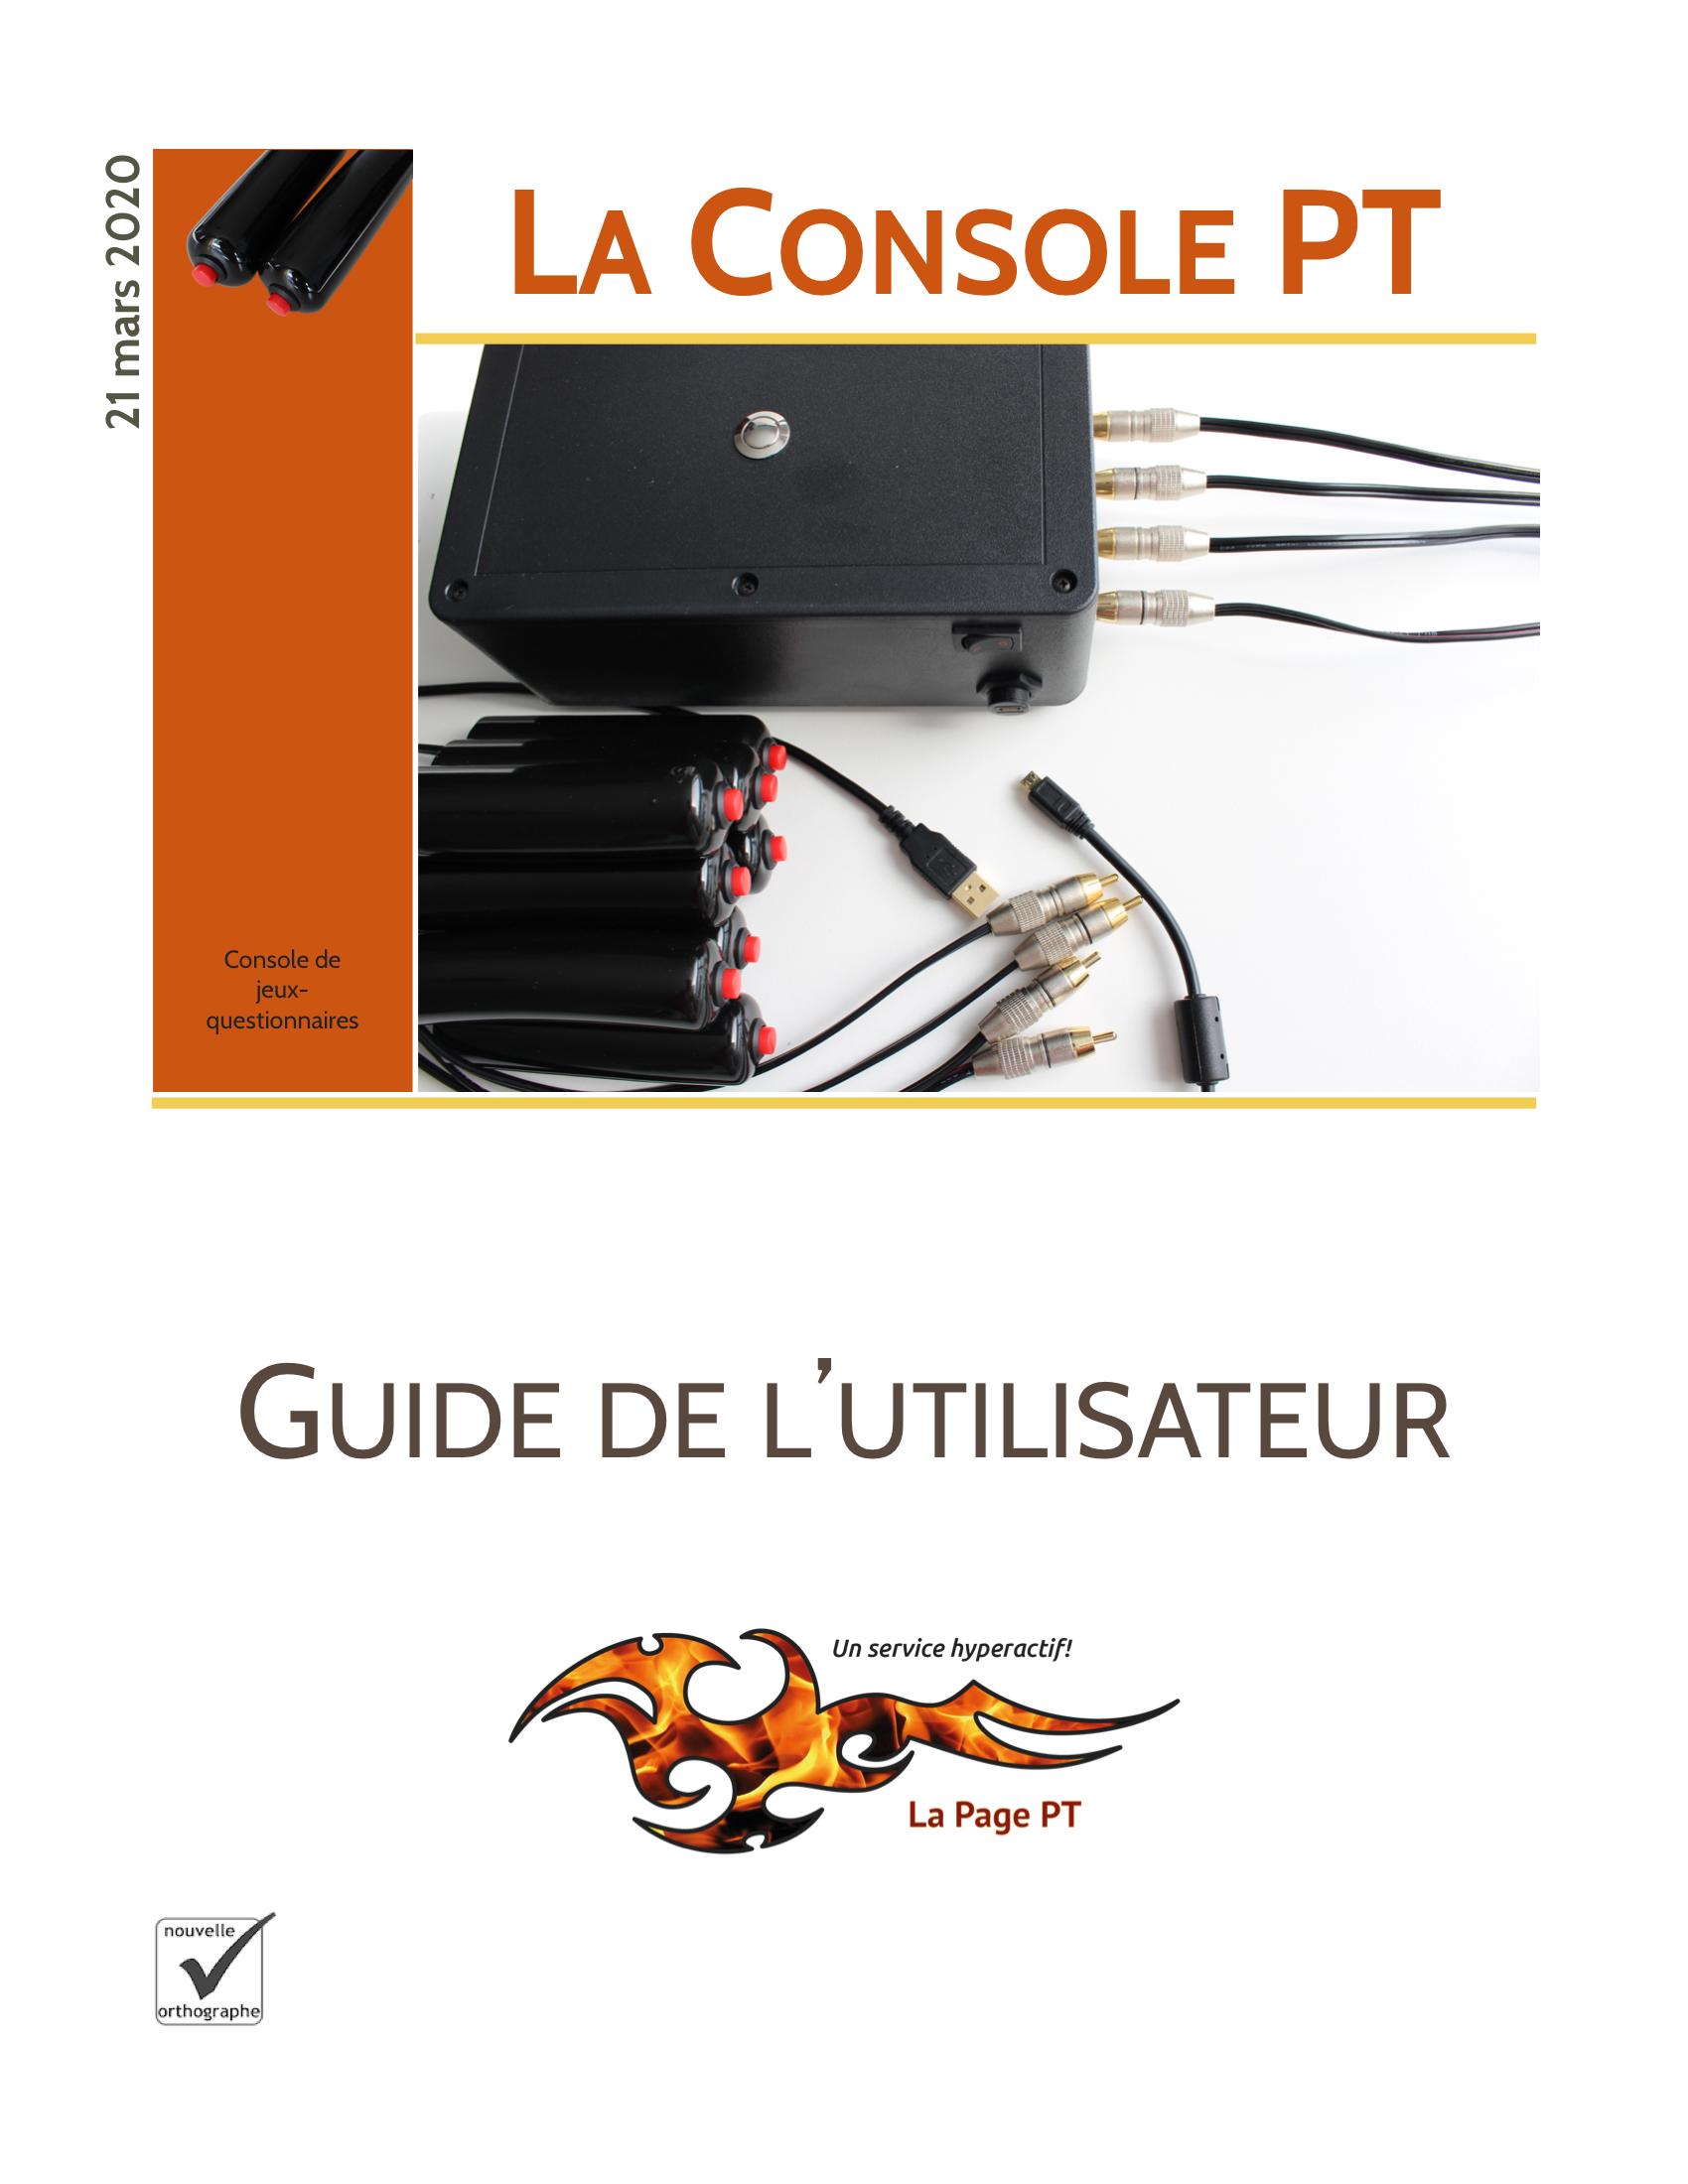 Le tout nouveau guide de l'utilisateur de la Console PT.